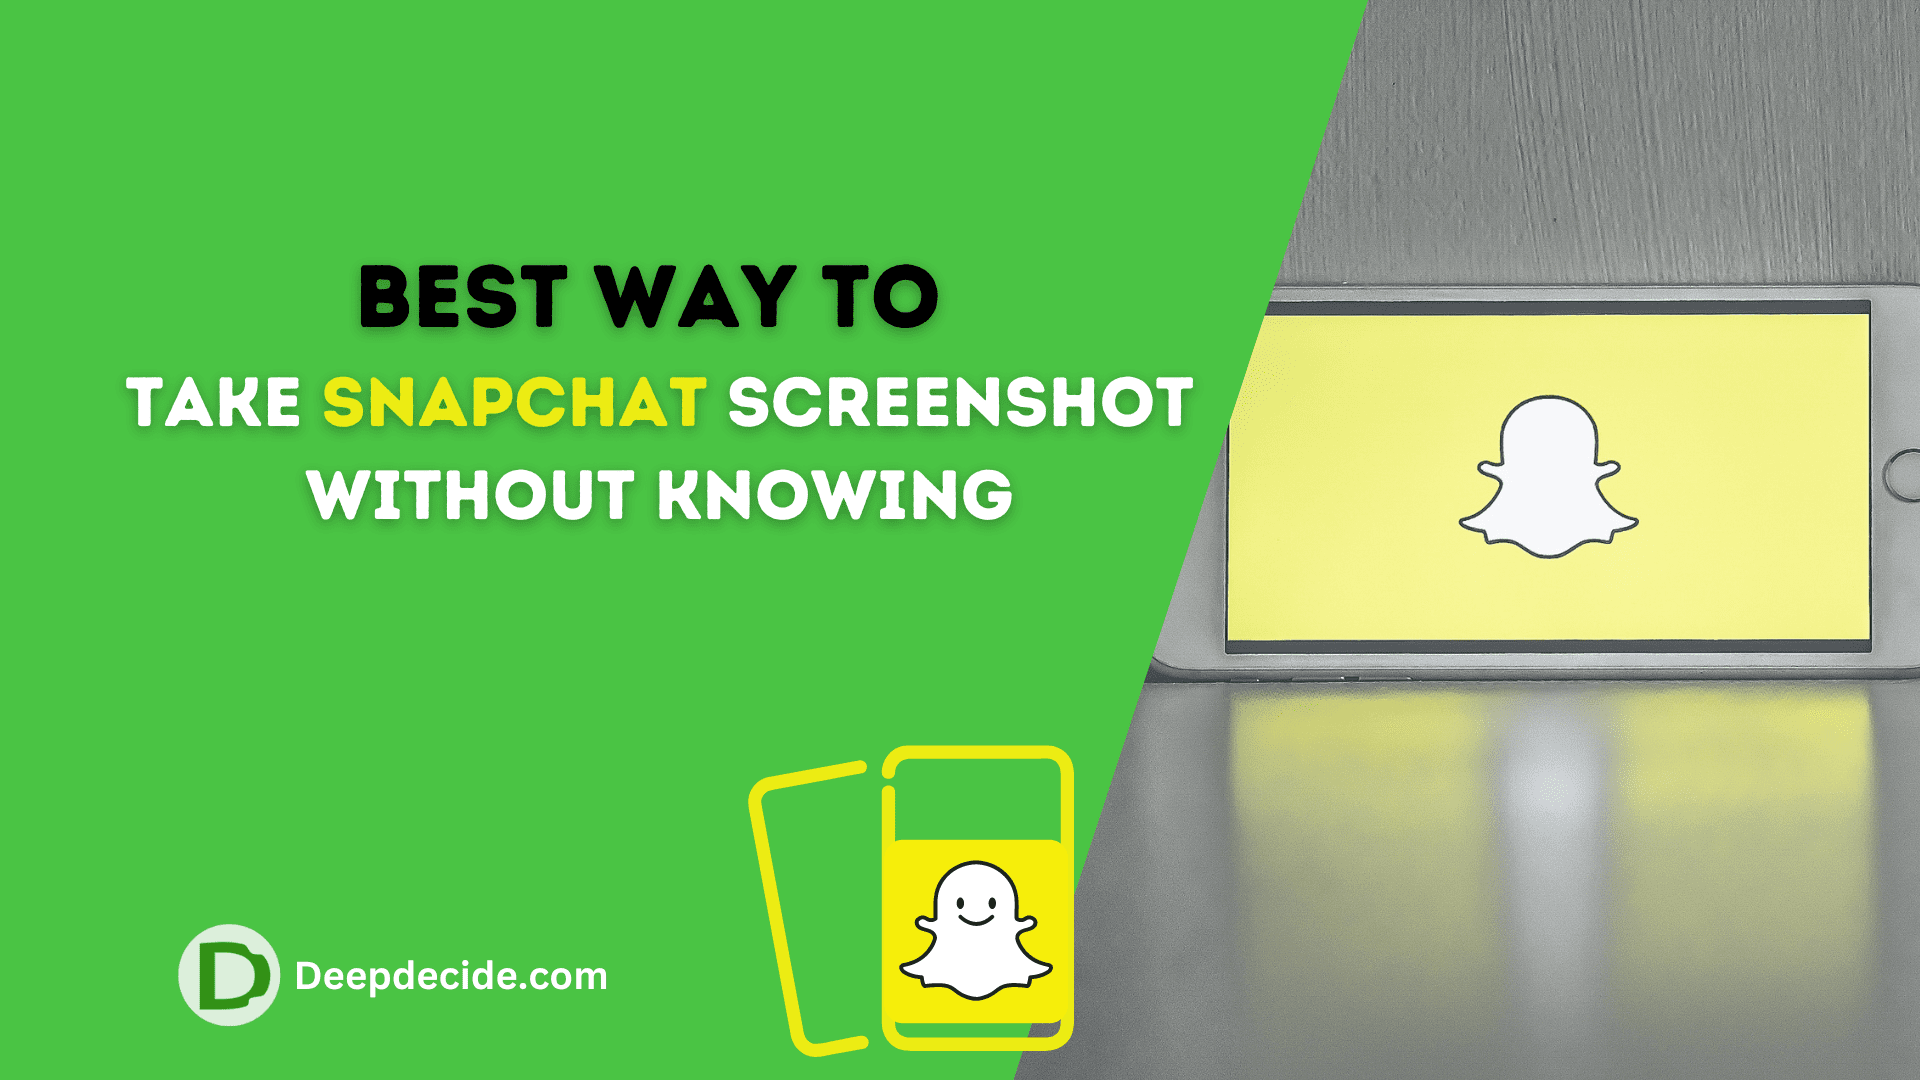 Take SnapChat Screenshot without knowing